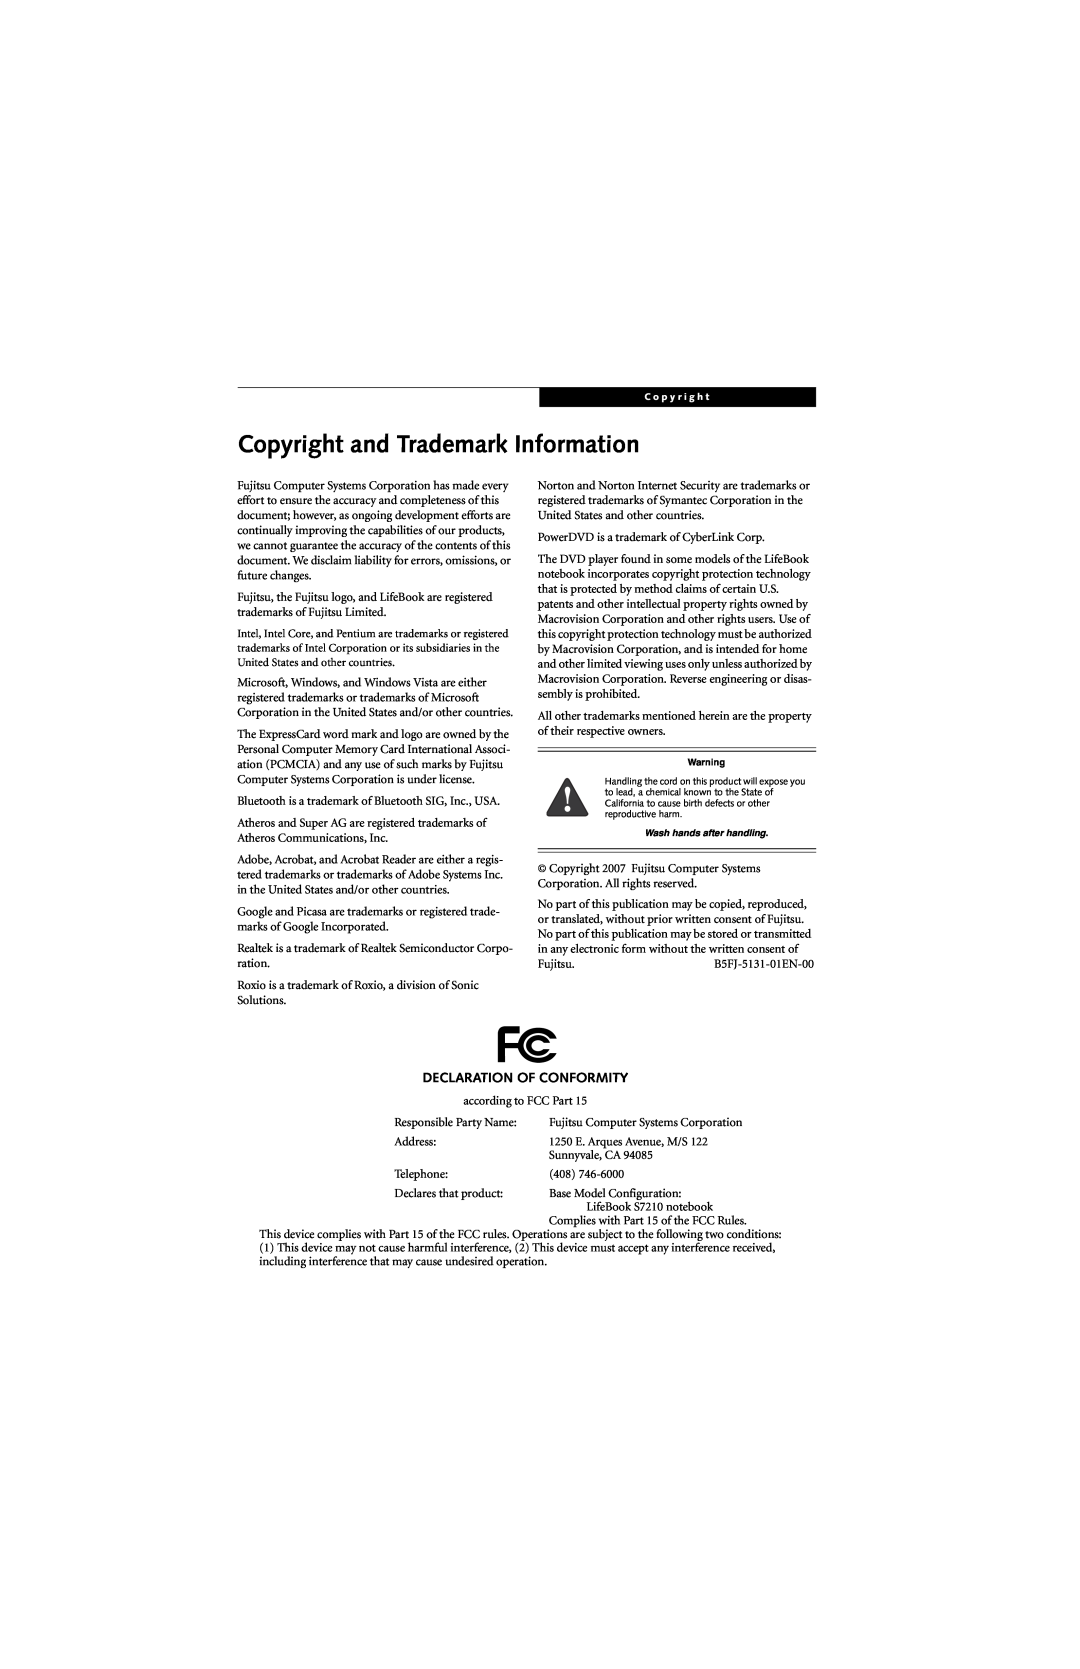 Fujitsu S7210 manual Copyright and Trademark Information, Declaration Of Conformity 